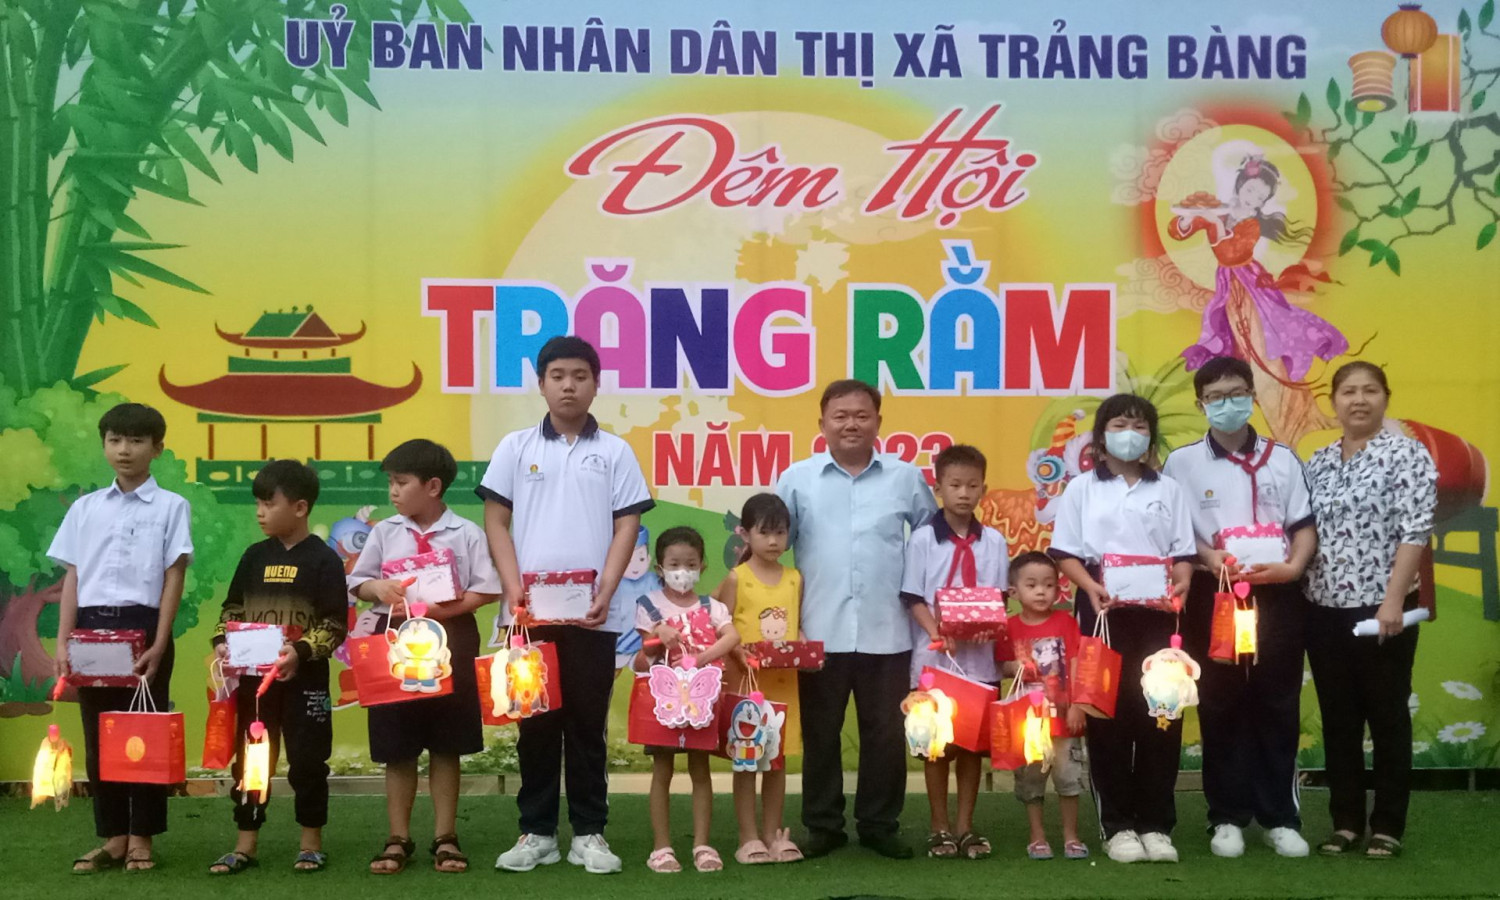 Ông Hà Minh Dảo – Phó Chủ tịch Uỷ ban nhân dân thị xã Trảng Bàng (thứ sáu, từ phải qua) tặng quà cho trẻ em mồ côi do dịch Covid-19.